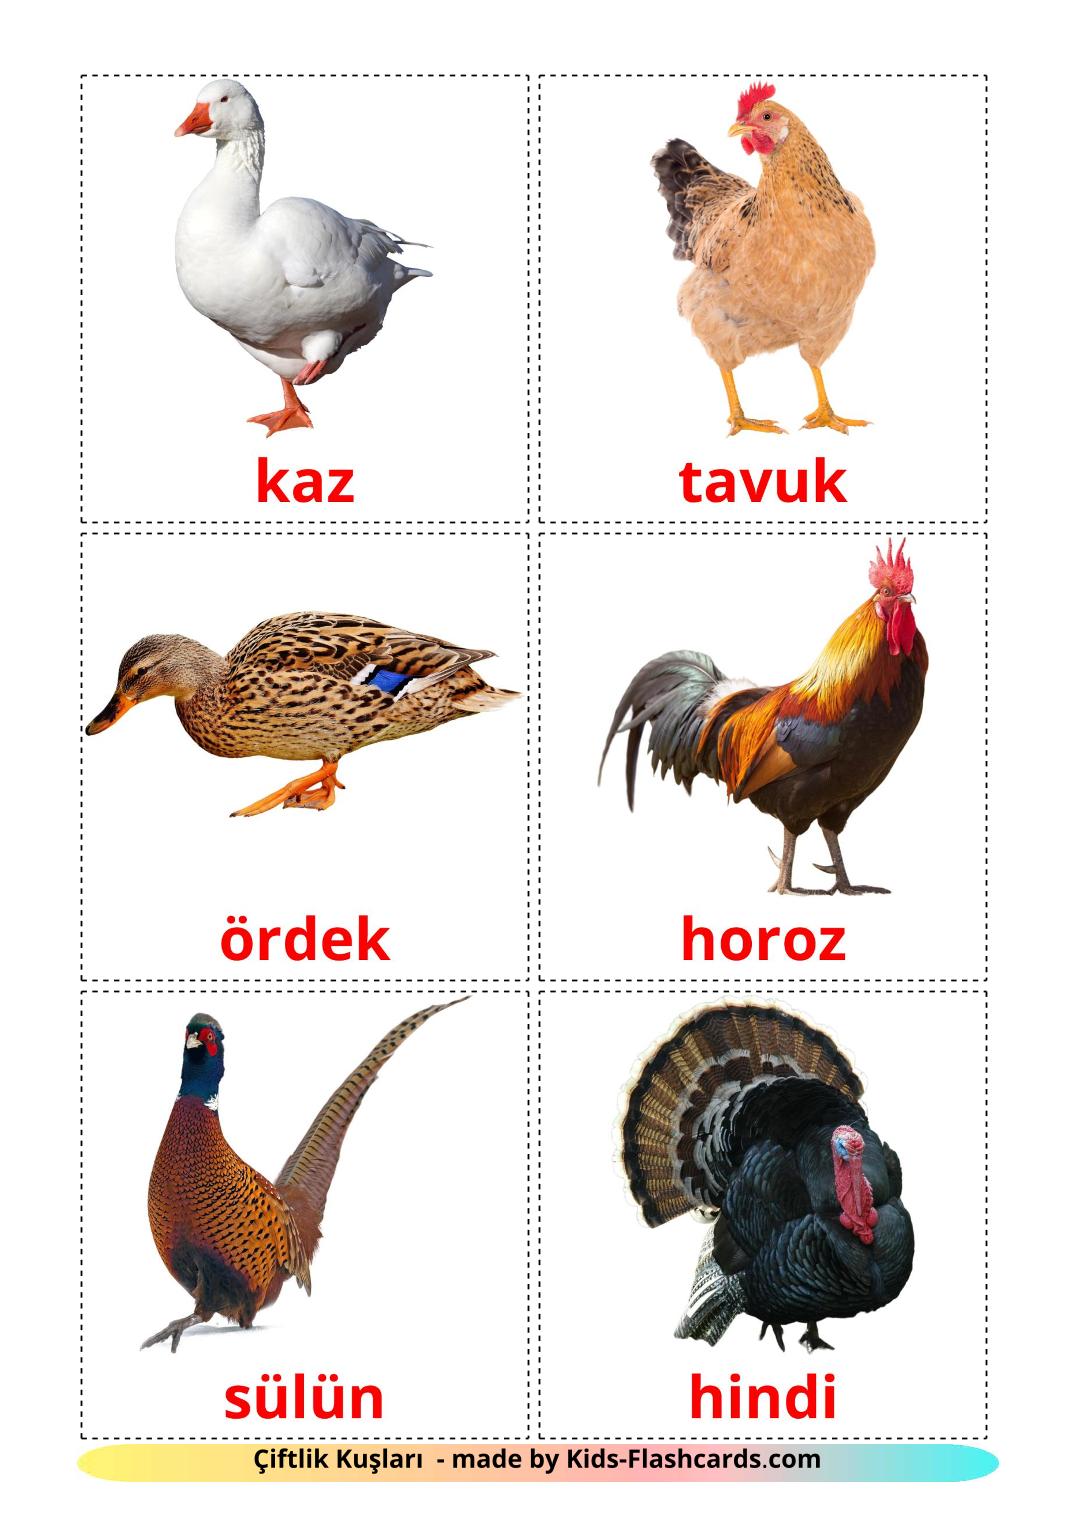 Птицы в деревне - 11 Карточек Домана на турецком